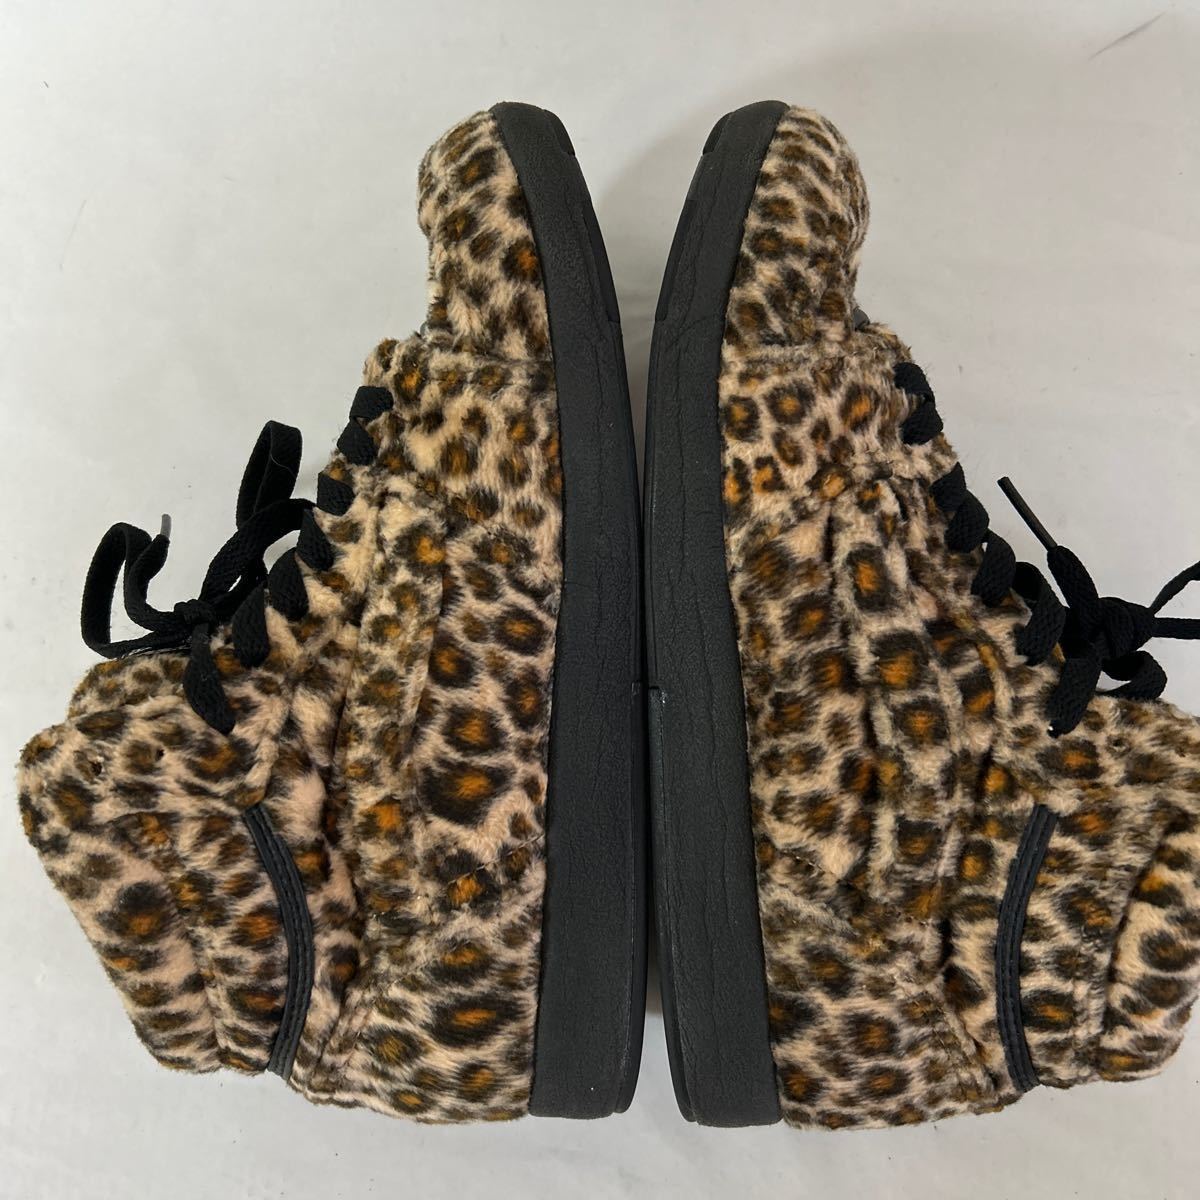 [VANS/ Vans ] - ikatto спортивные туфли Leopard леопардовая расцветка 24.5 ботинки искусственный мех 